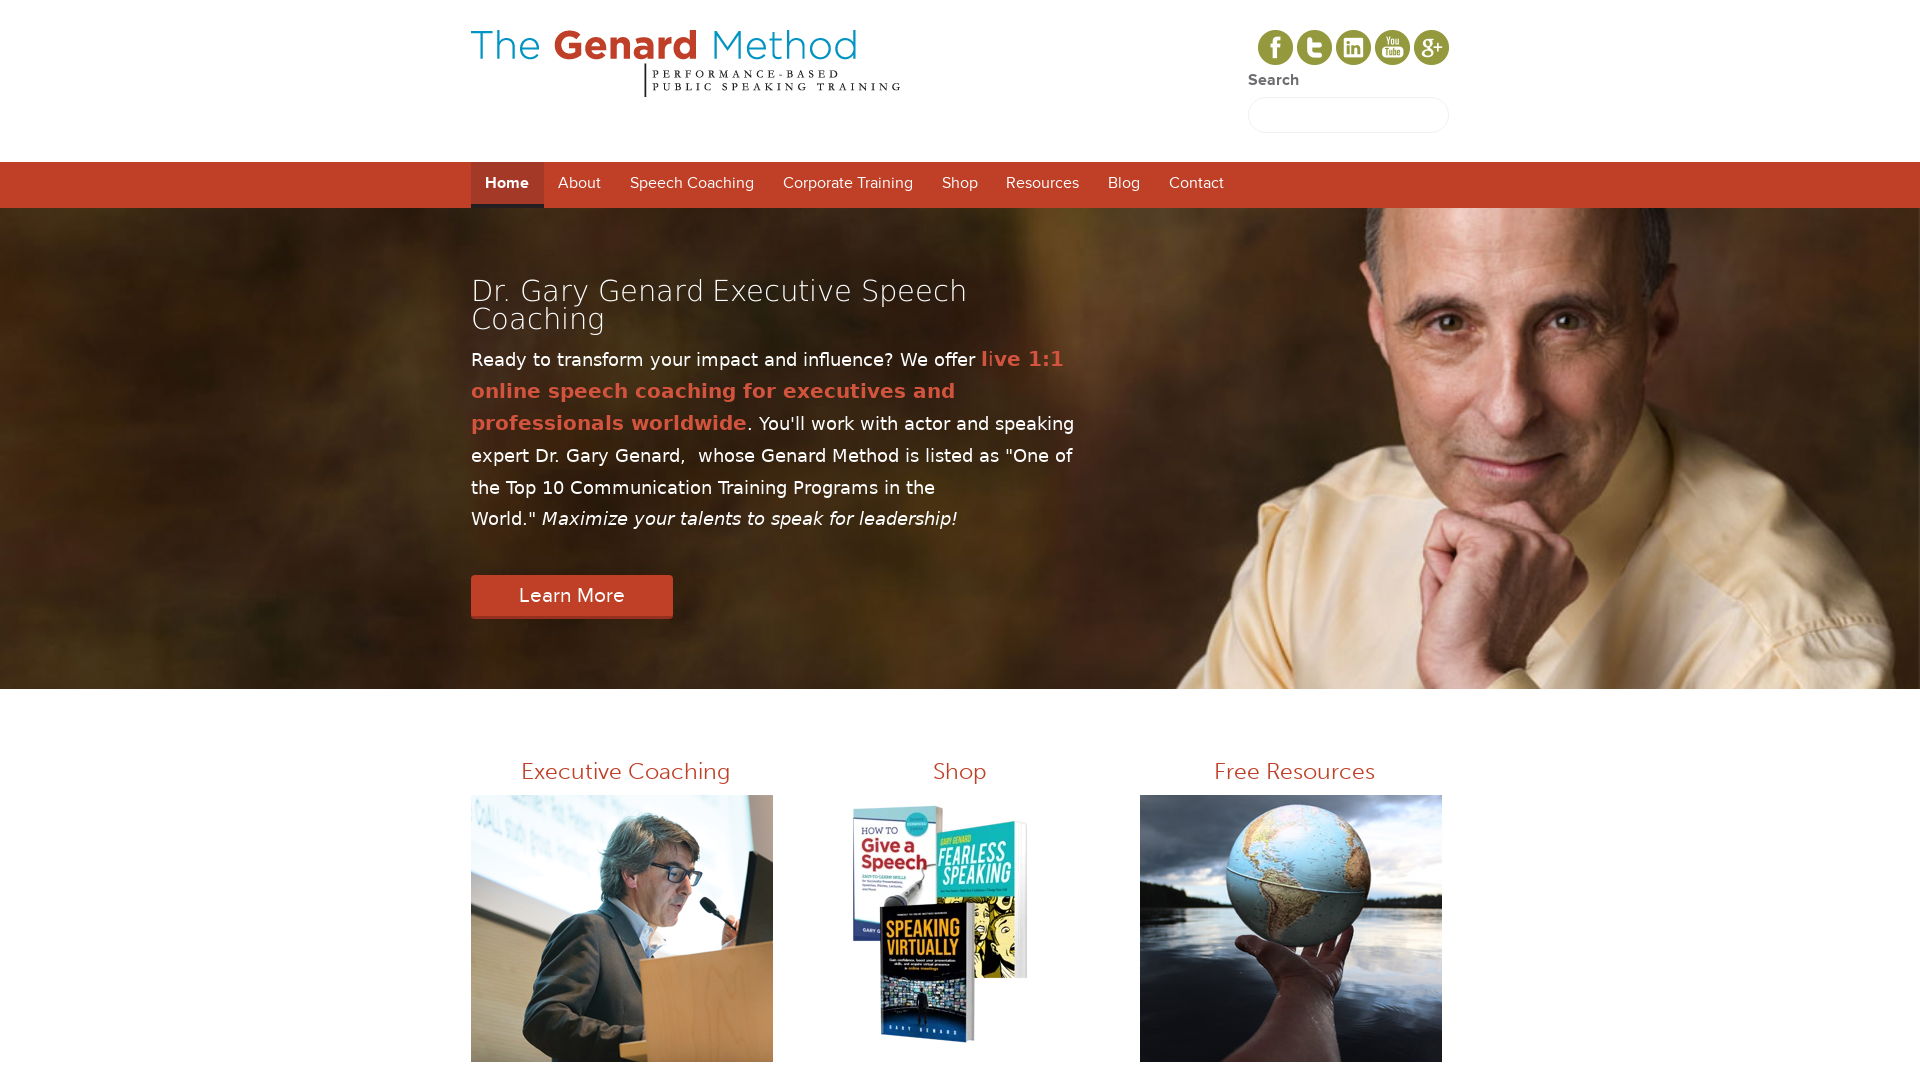 The Genard Method